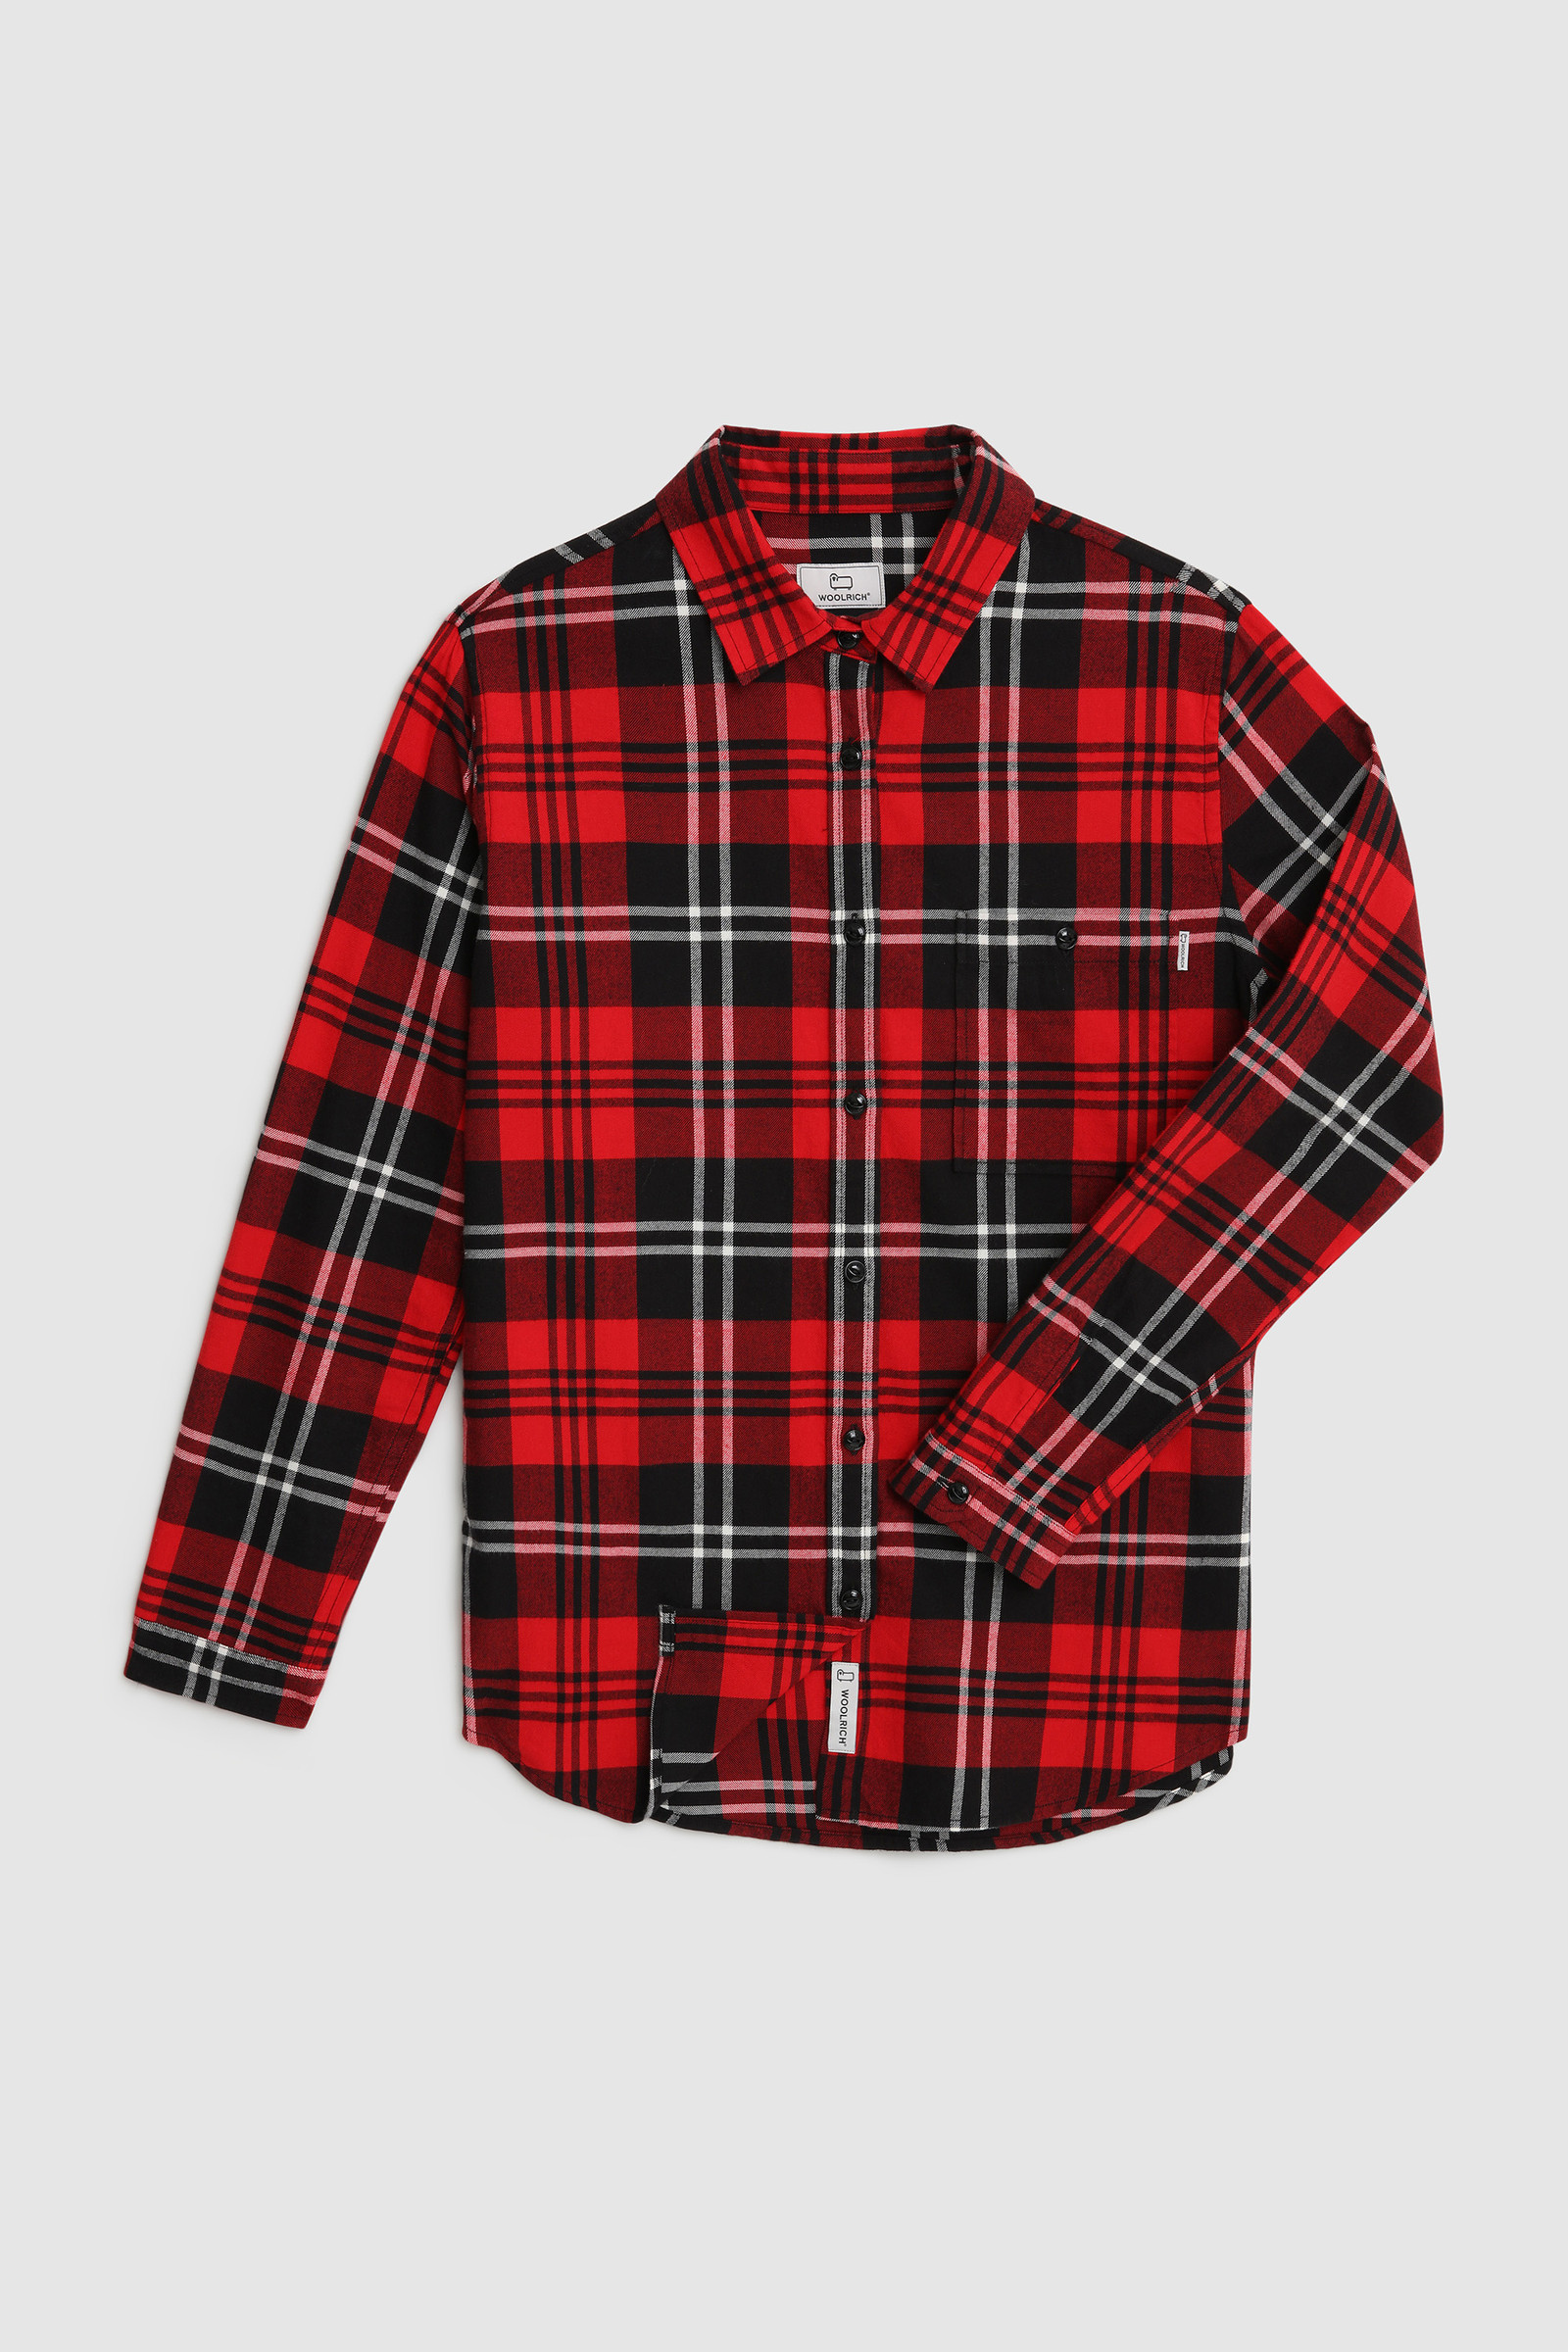 lumberjack shirt red